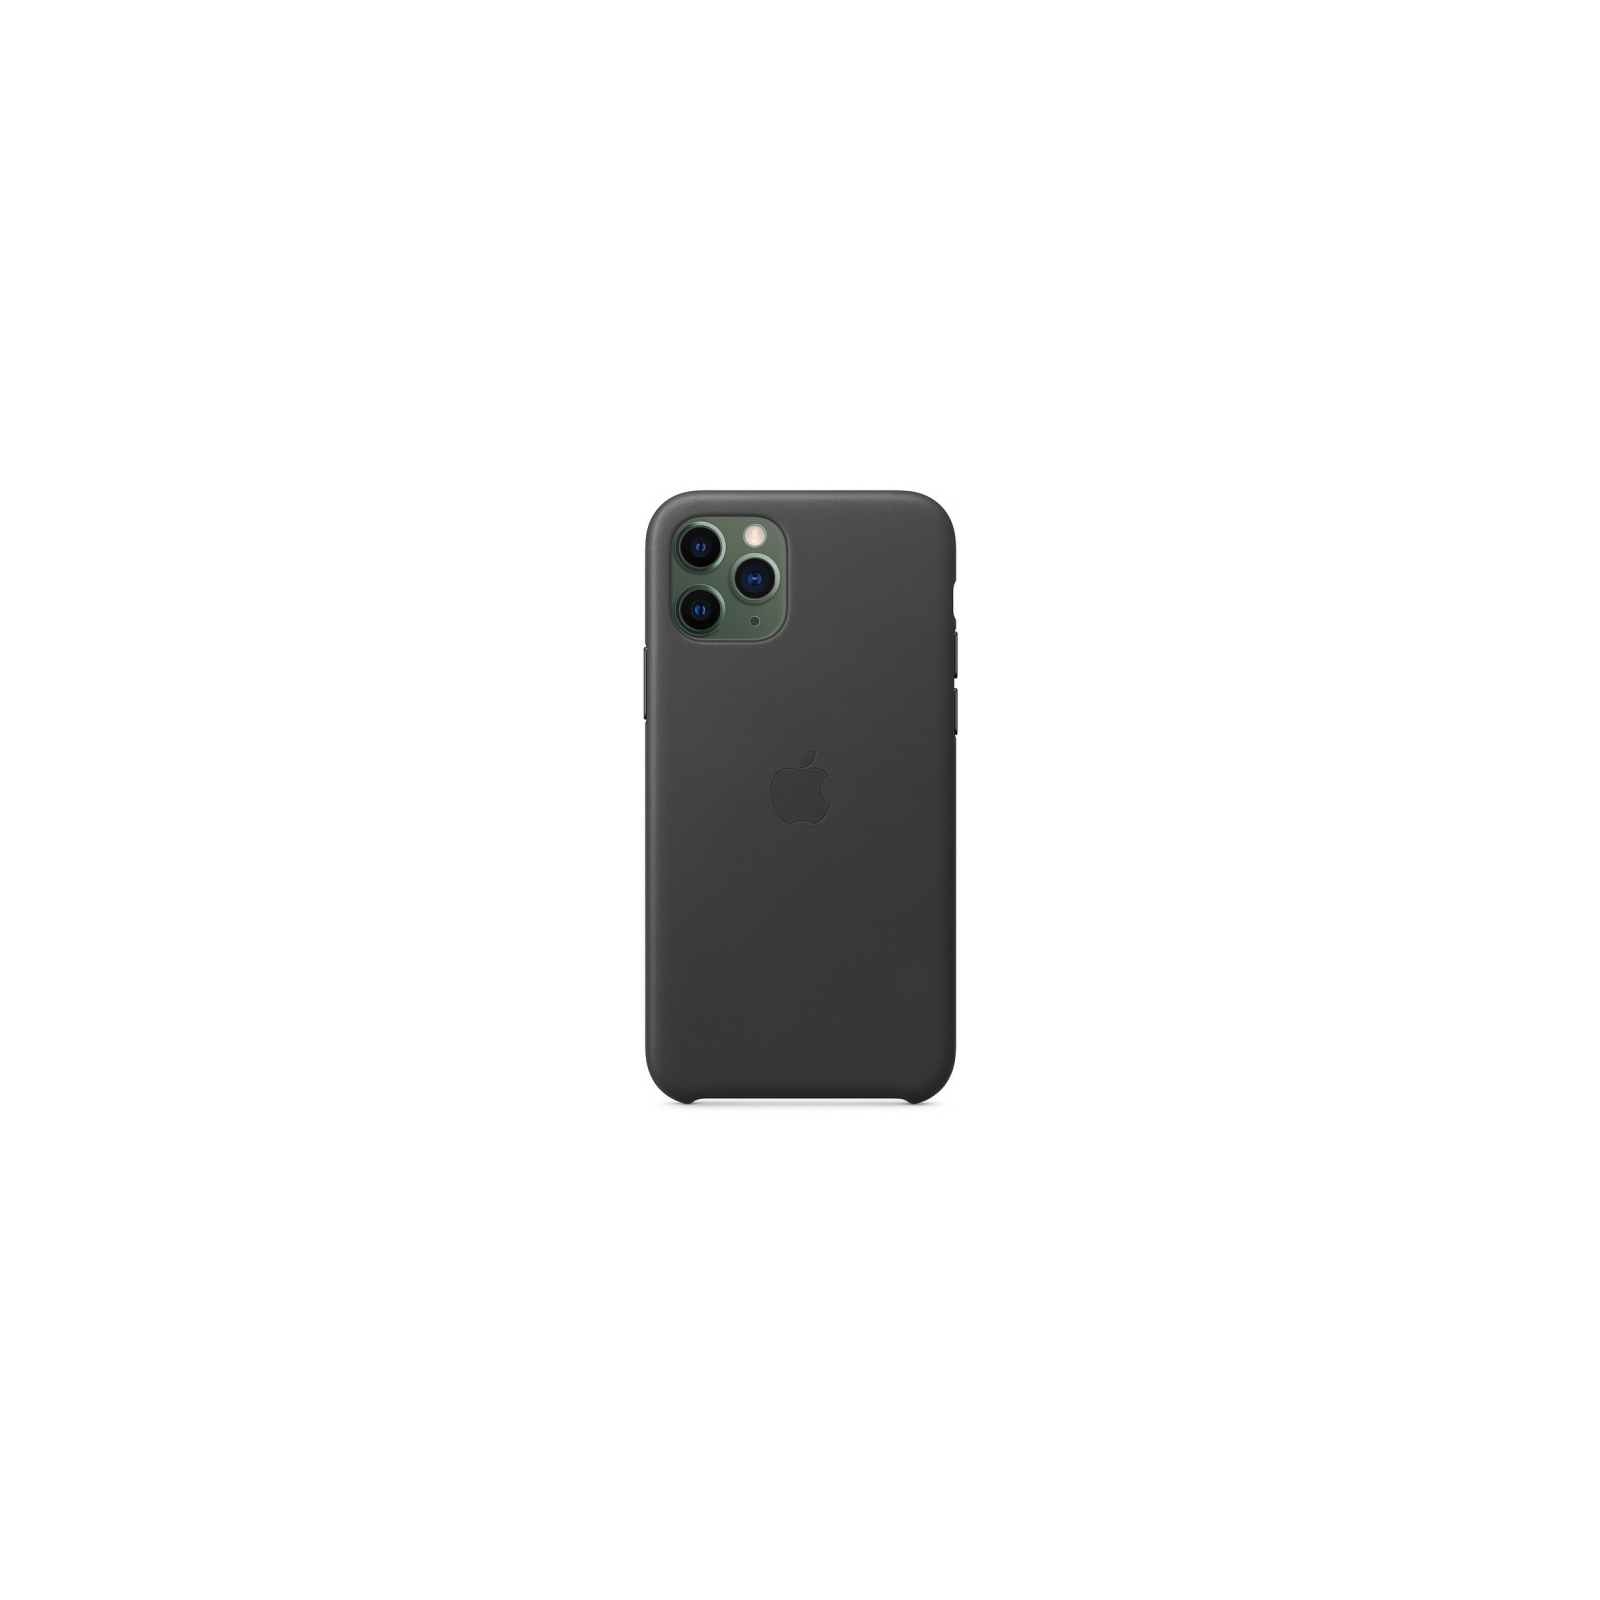 Чехол для мобильного телефона Apple iPhone 11 Pro Leather Case - Black (MWYE2ZM/A) изображение 3